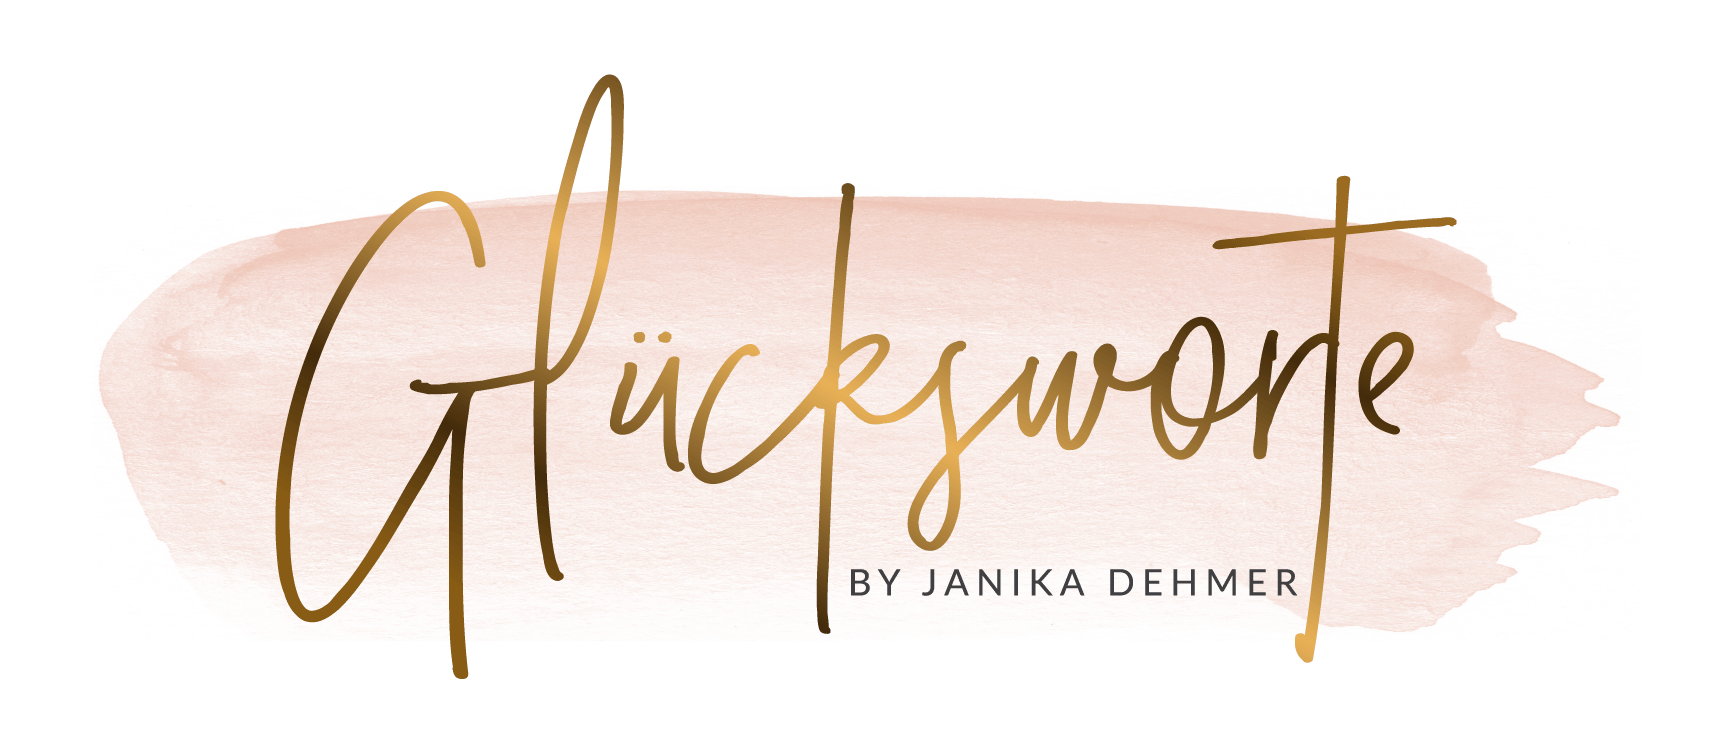 Glücksworte by Janika Dehmer